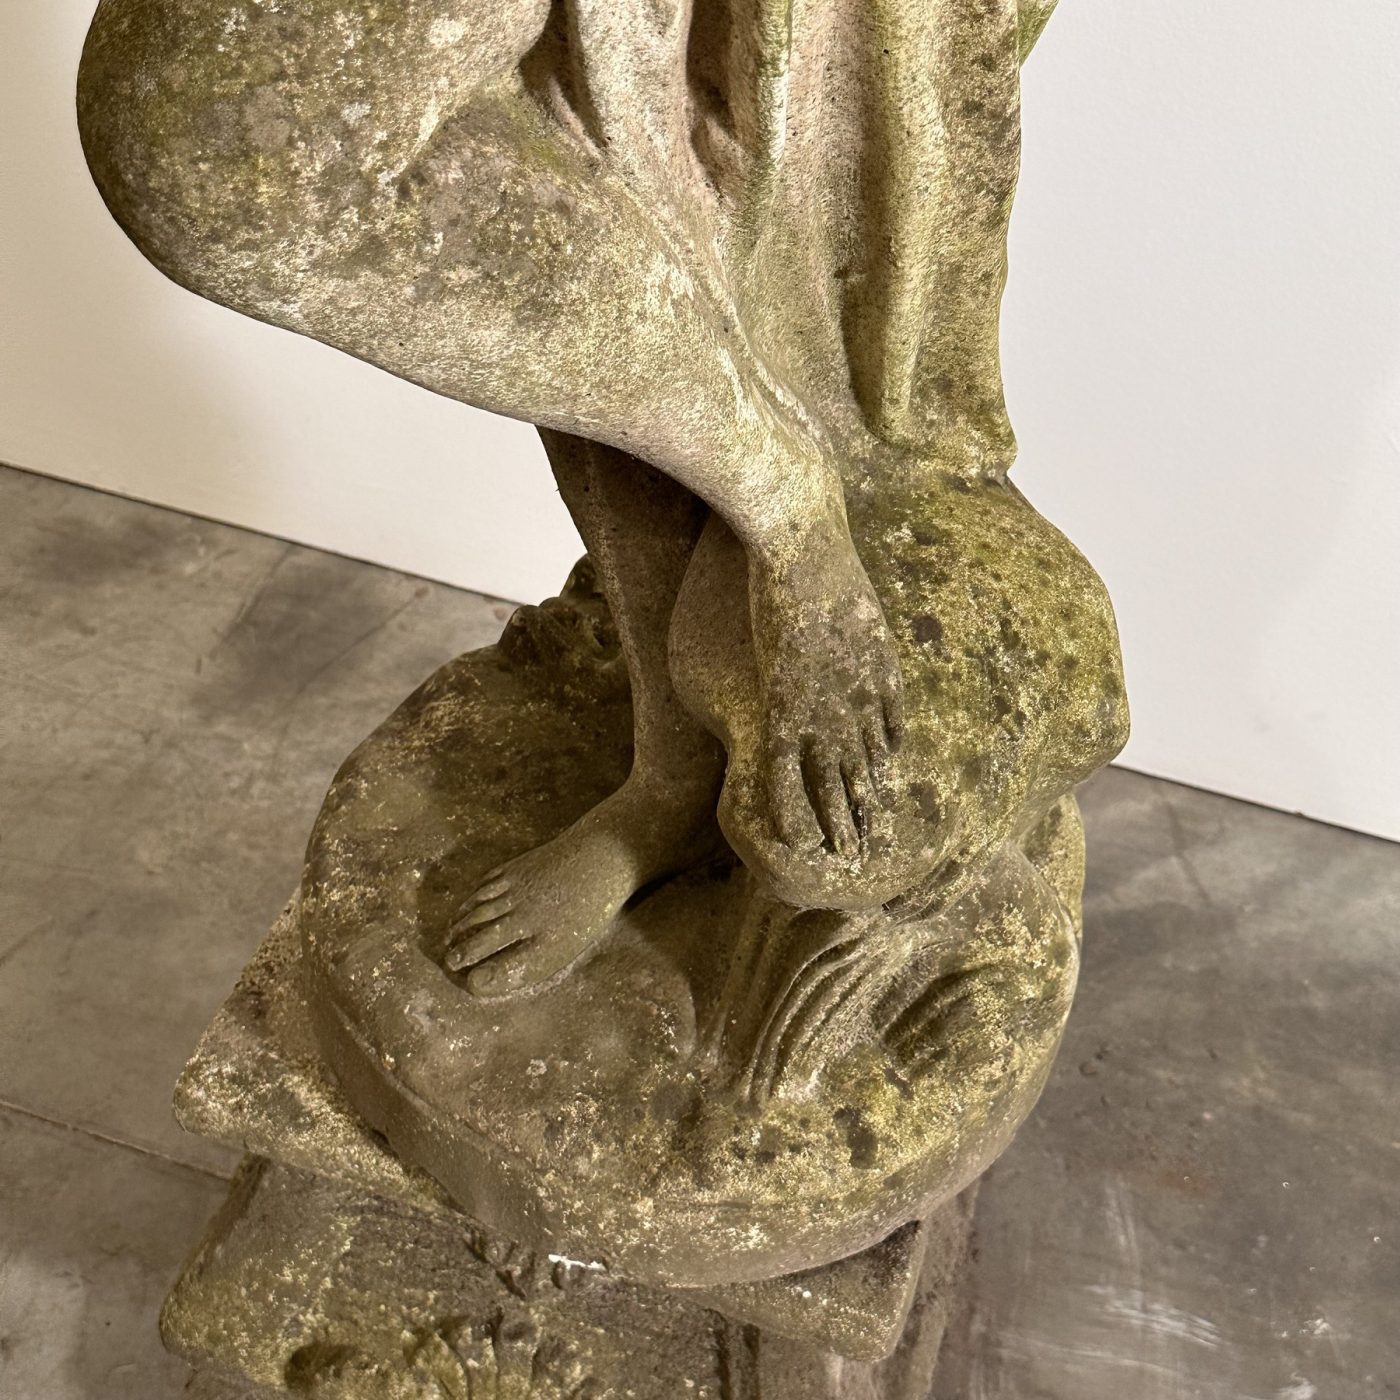 objet-vagabond-concrete-statue0003